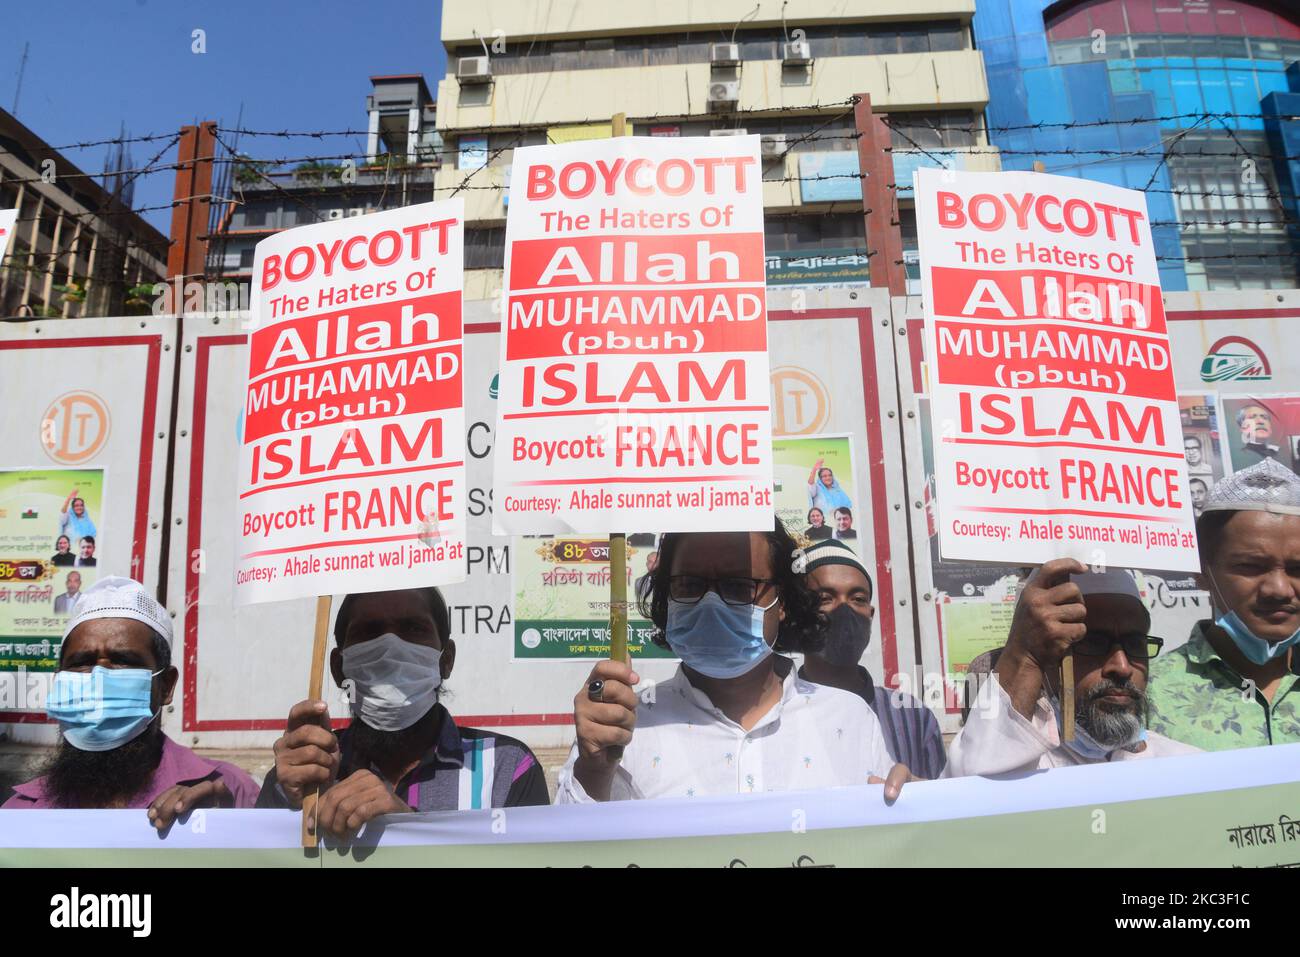 Aktivisten einer islamistischen Partei veranstalteten am 7. November 2020 in Dhaka, Bangladesch, eine Demonstration, die zum Boykott französischer Produkte aufrief und den französischen Präsidenten Emmanuel Macron für seine Kommentare zu den Karikaturen des Propheten Mohammed anprangerte (Foto: Mamunur Rashid/NurPhoto) Stockfoto